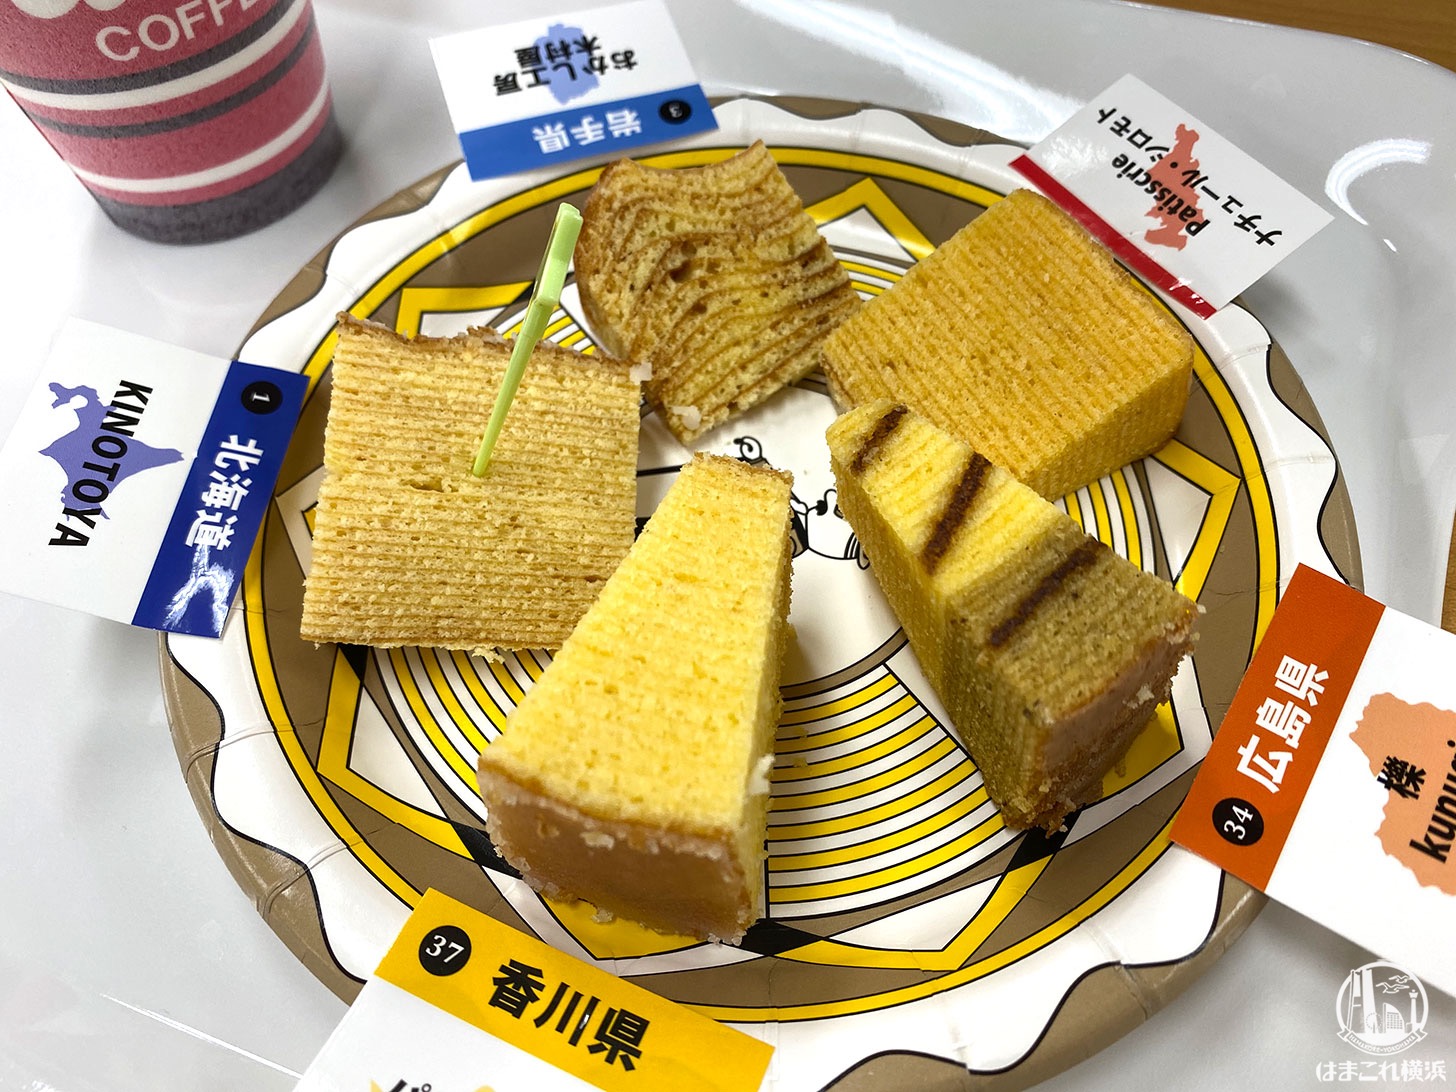 横浜高島屋「バウムクーヘン博覧会」食べ比べして焼きたて食べて楽しすぎ！詰め合わせも購入